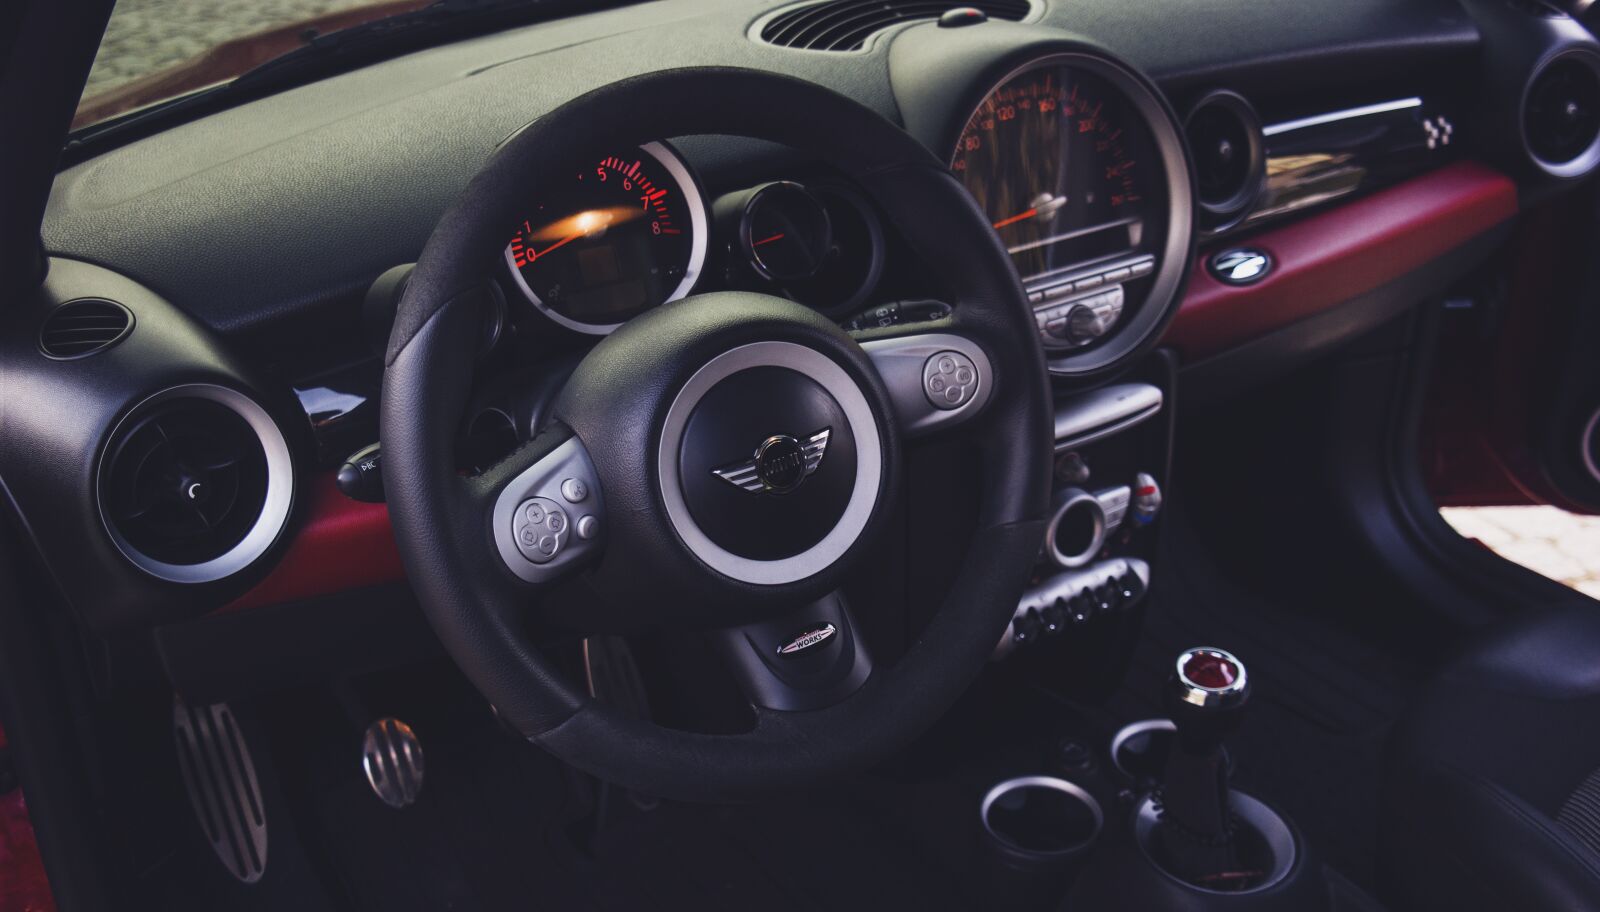 Samsung NX2000 sample photo. Steering wheel, dashboard, indoor photography